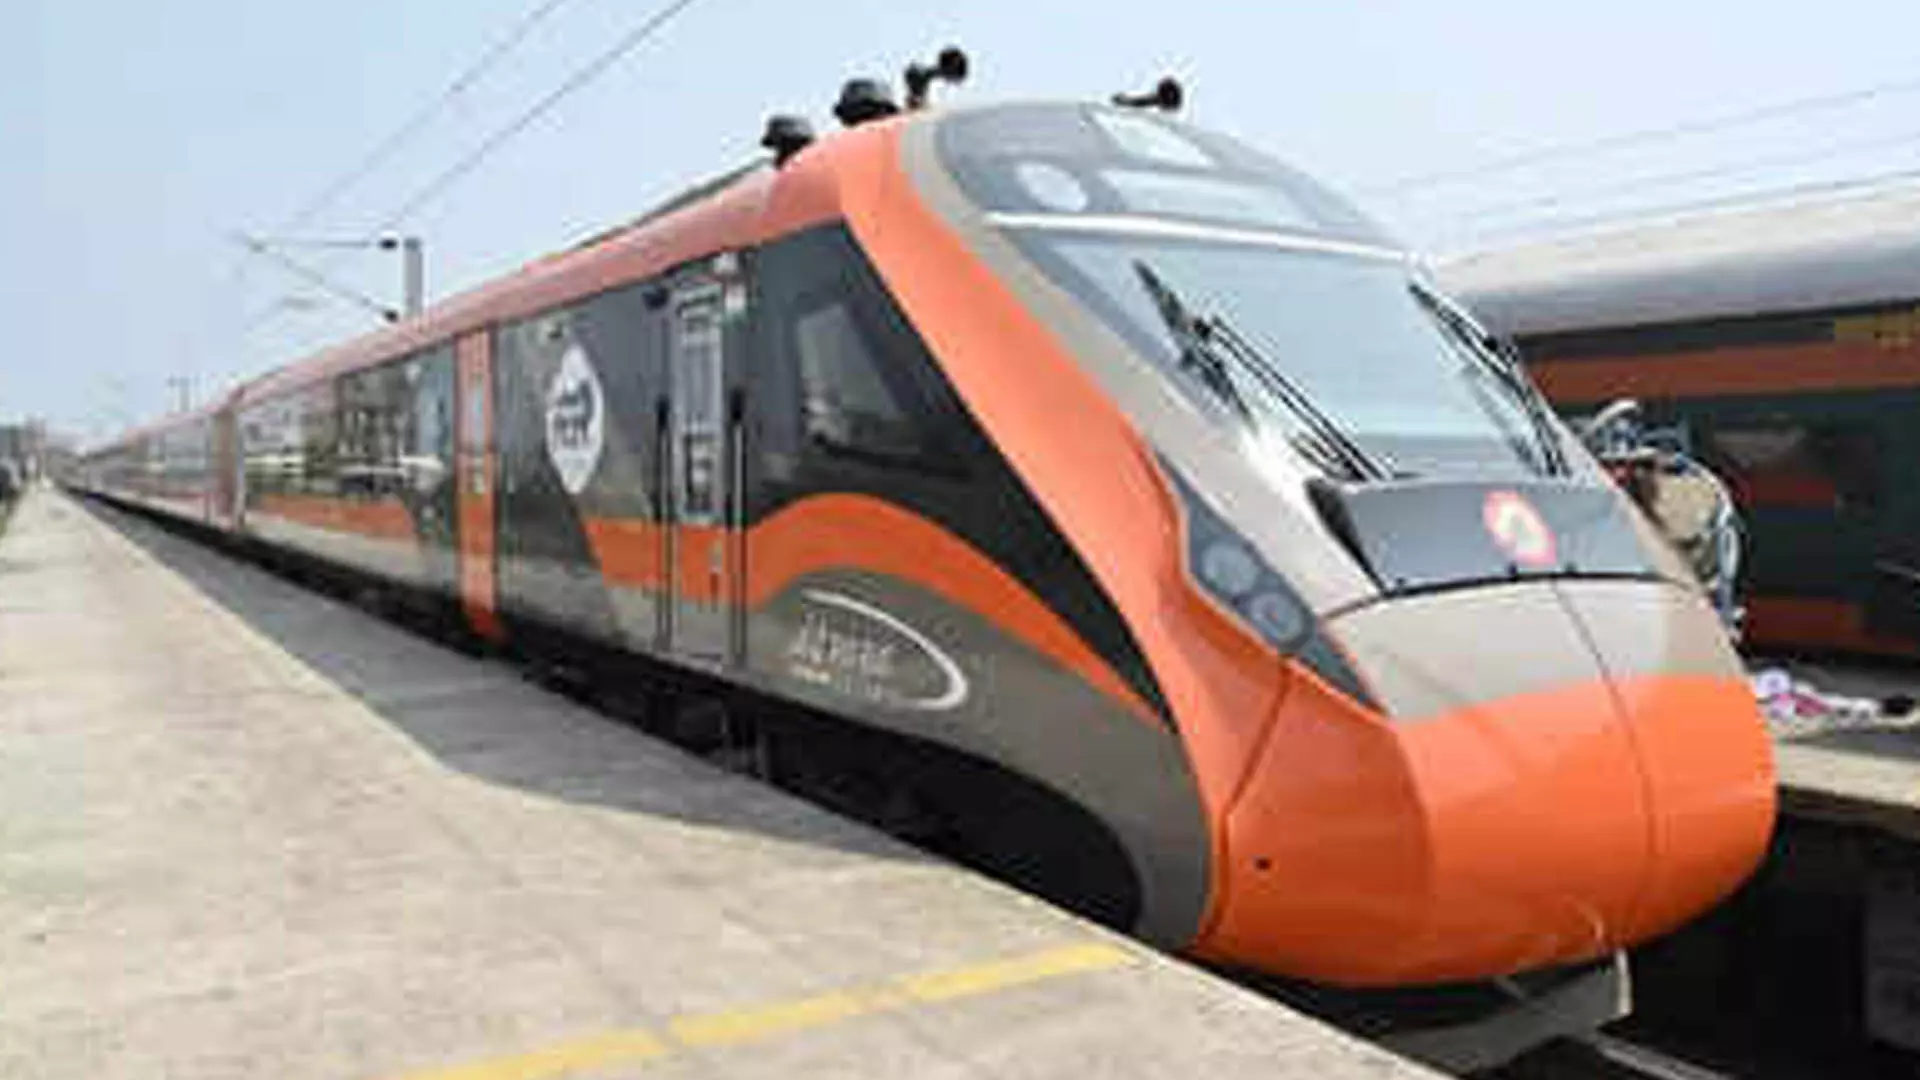 10 नई वंदे भारत एक्सप्रेस ट्रेनें! पीएम मोदी, नई वंदे भारत ट्रेनों को दिखाई हरी झंडी